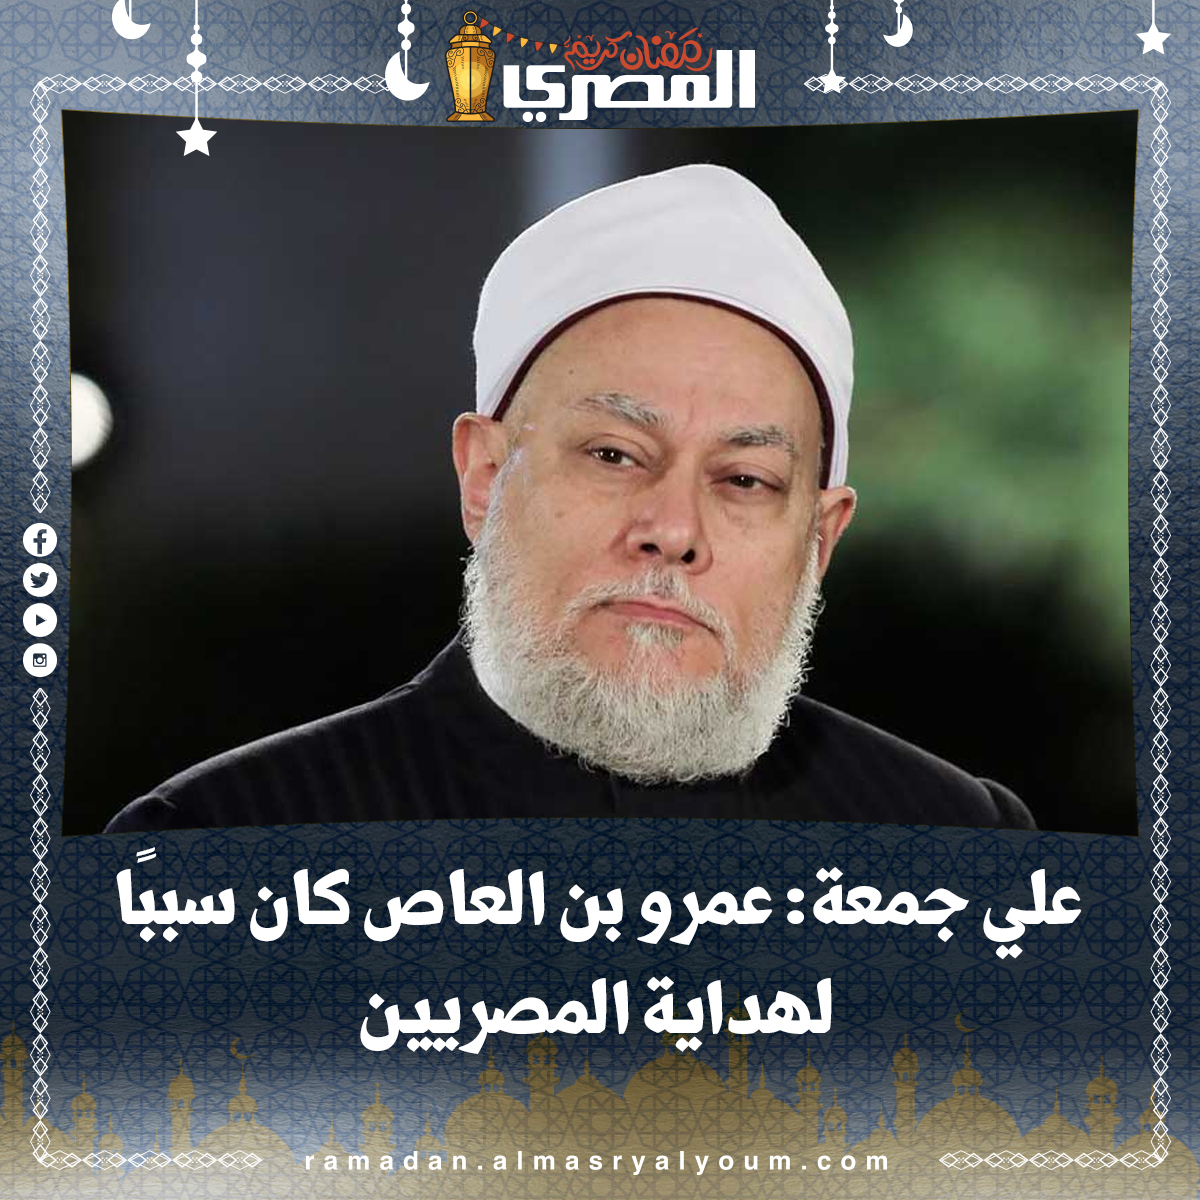 علي جمعة عمرو بن العاص كان سببًا لهداية المصريين